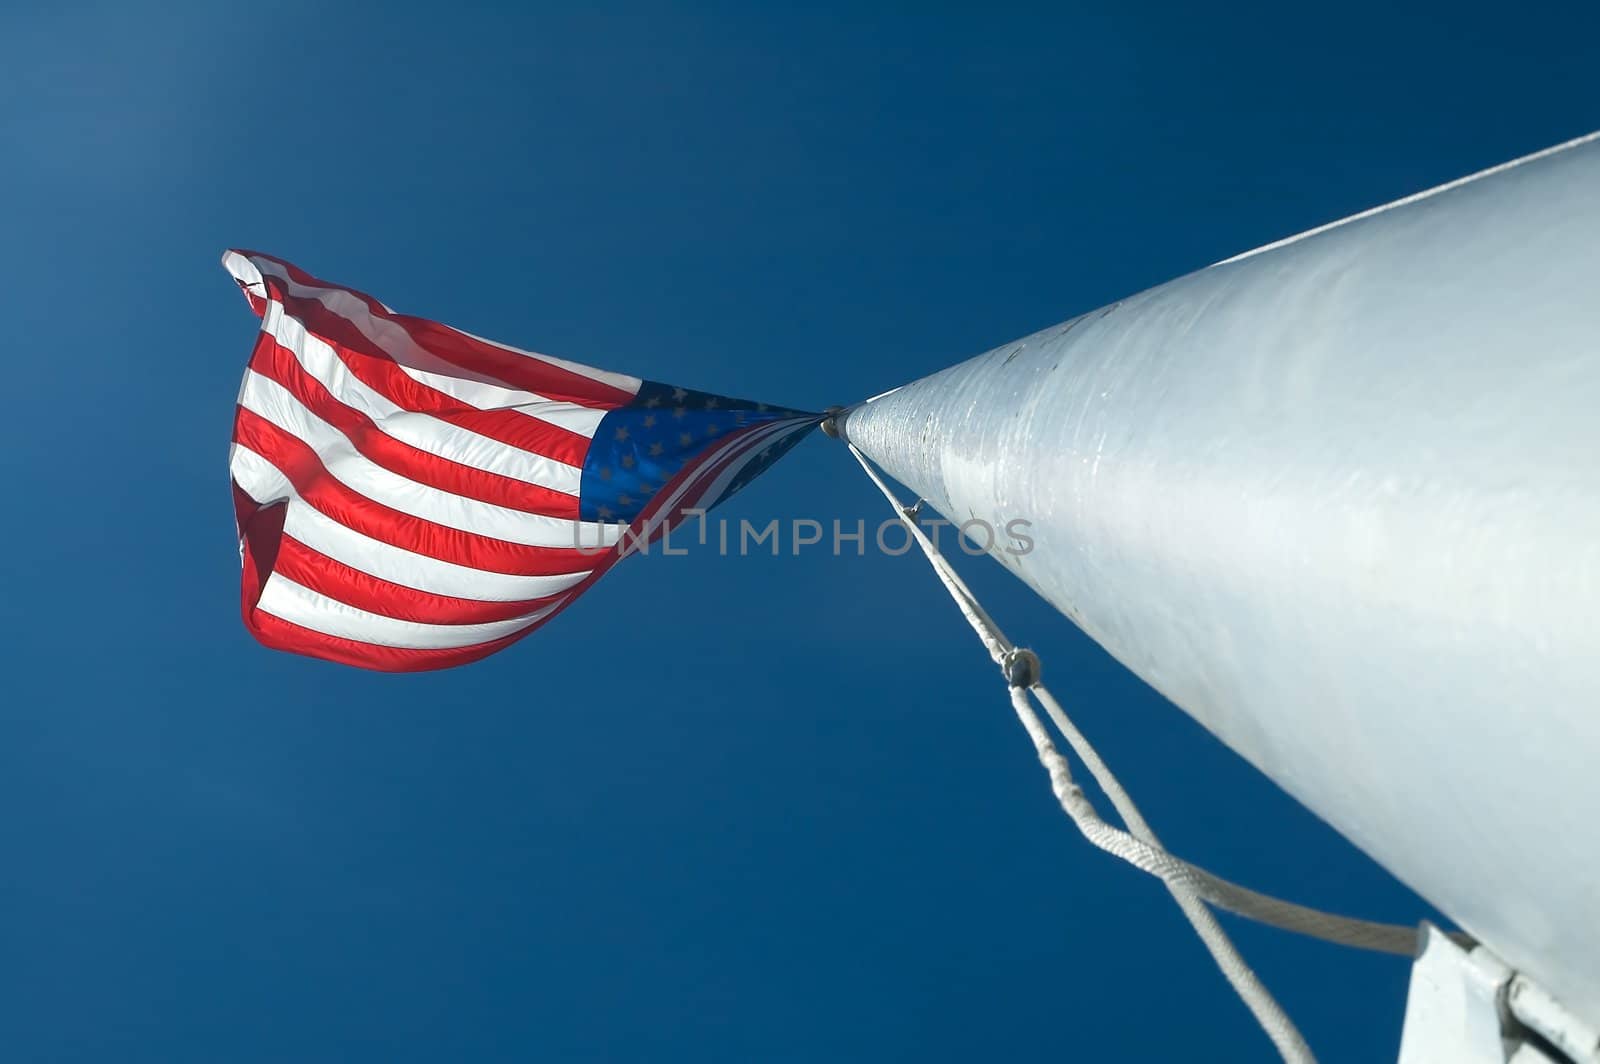 usa flag waving on a white pole, clear blue sky